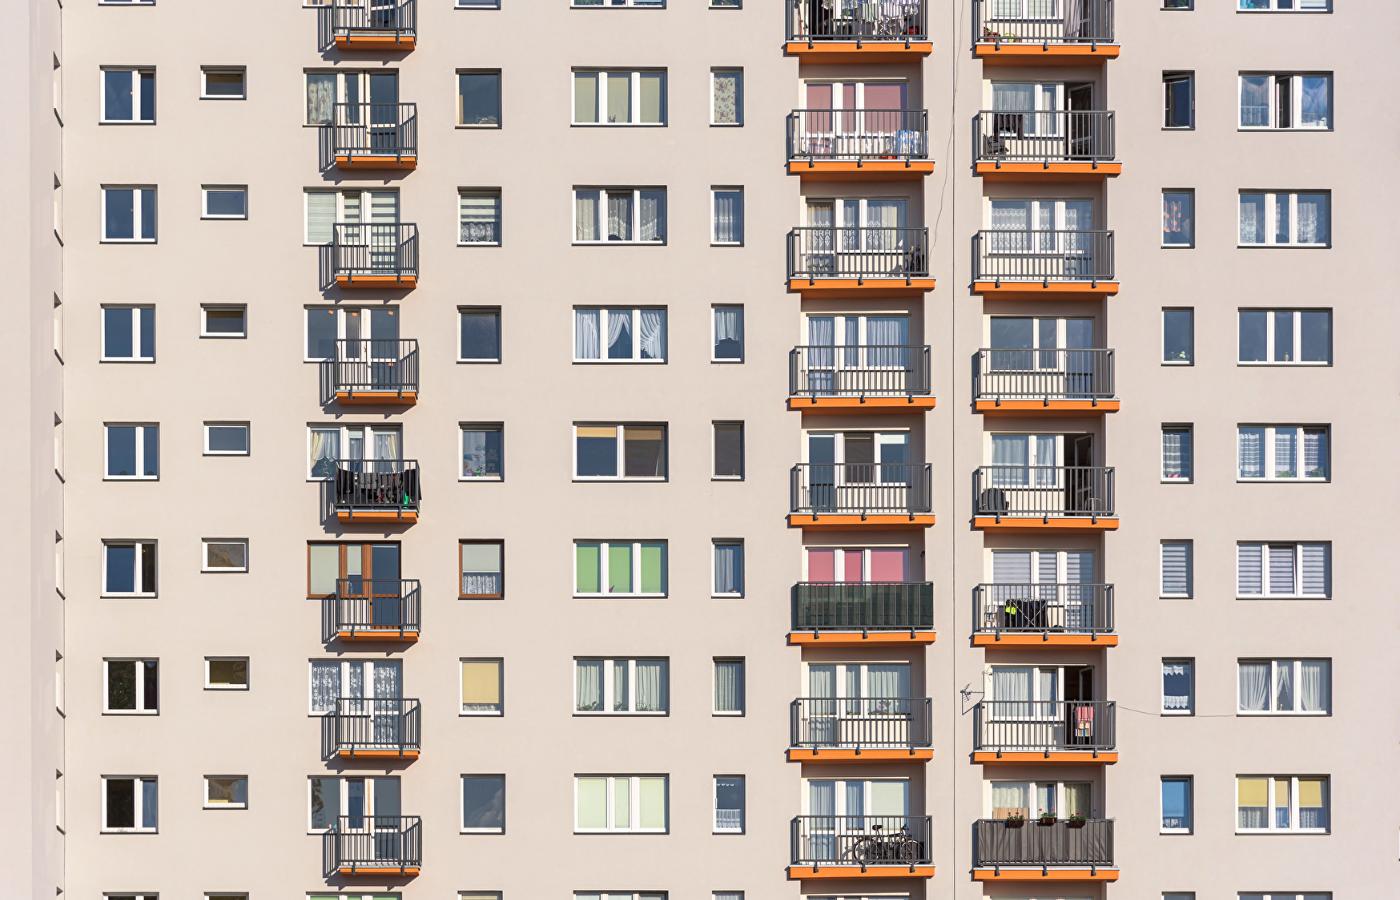 Średnia cena mieszkań w Warszawie właśnie przekroczyła 12 tys. zł za metr.